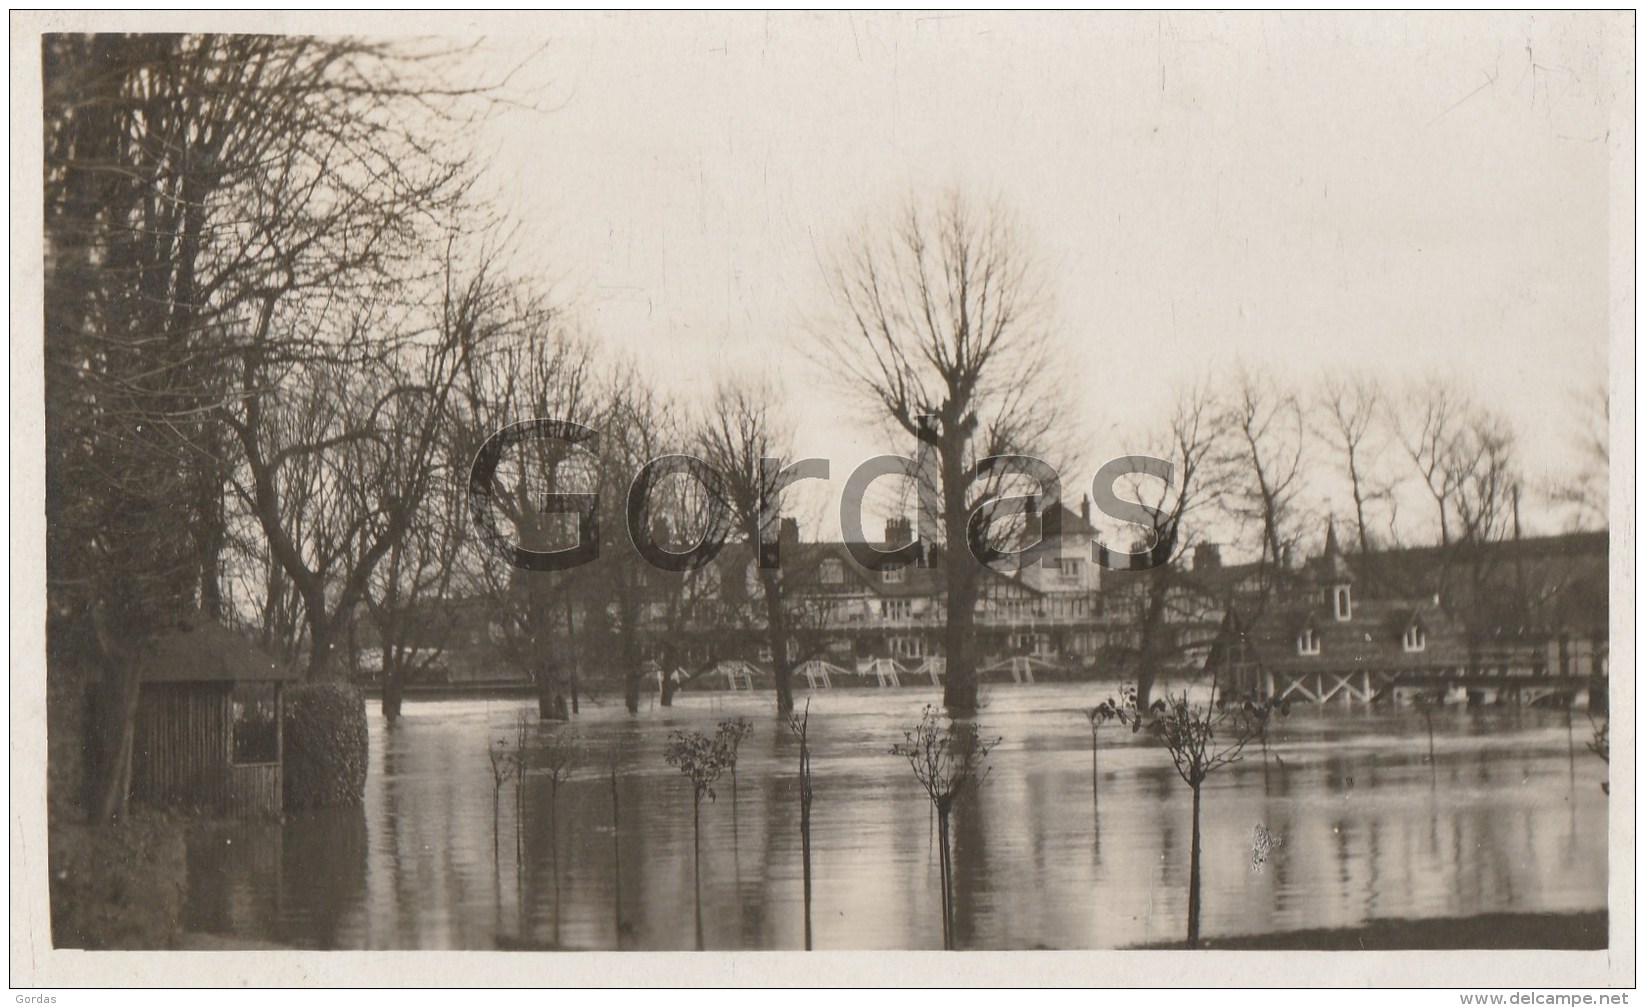 UK - Maidenhead - 1927 - Flooding - Photo 140x80mm - Windsor